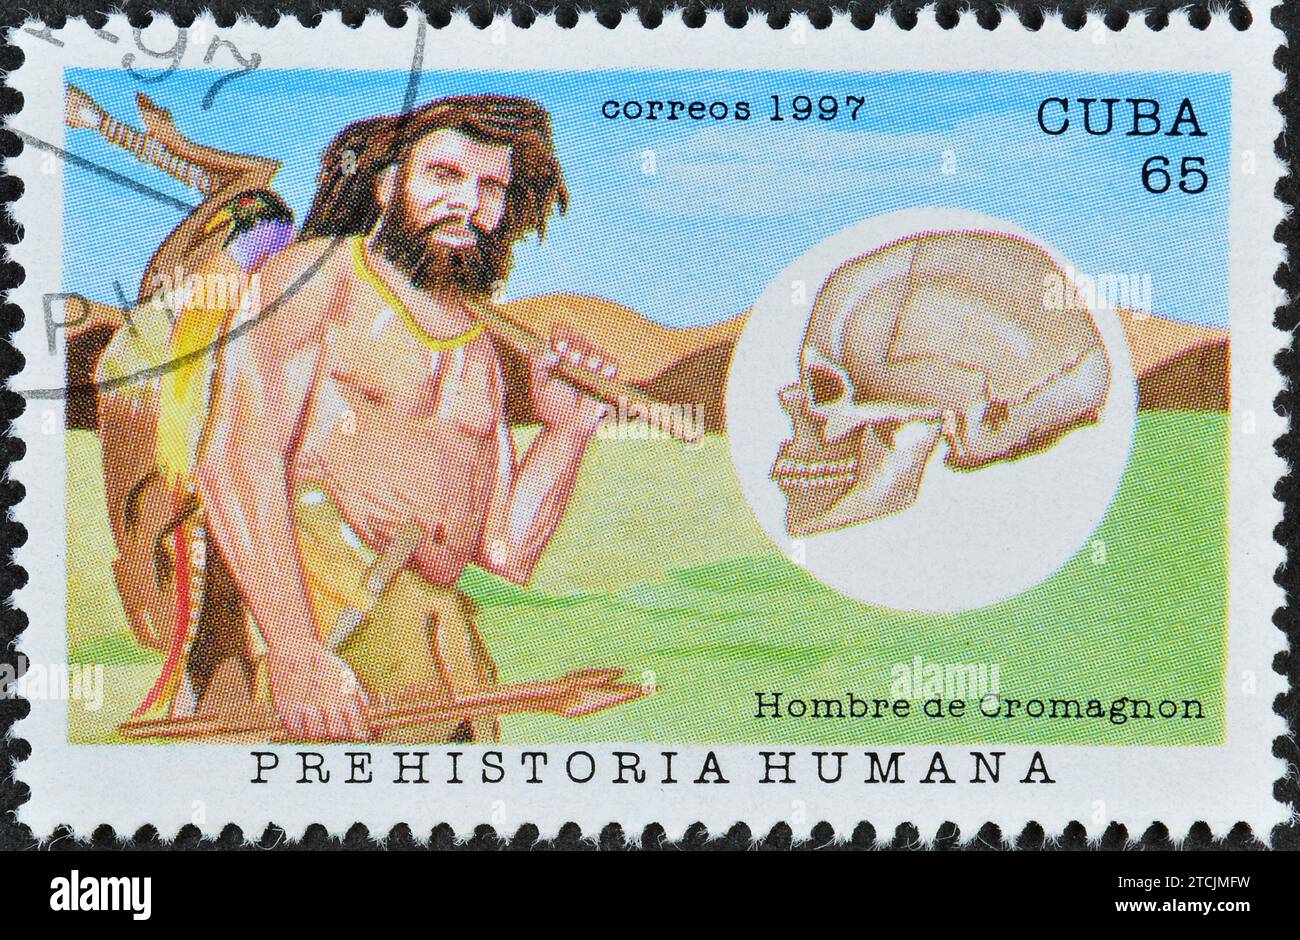 Timbre-poste annulé imprimé par Cuba, qui montre Homosapiens sapiens sapiens - Cro-Magnon-typus, Hominides, vers 1997. Banque D'Images